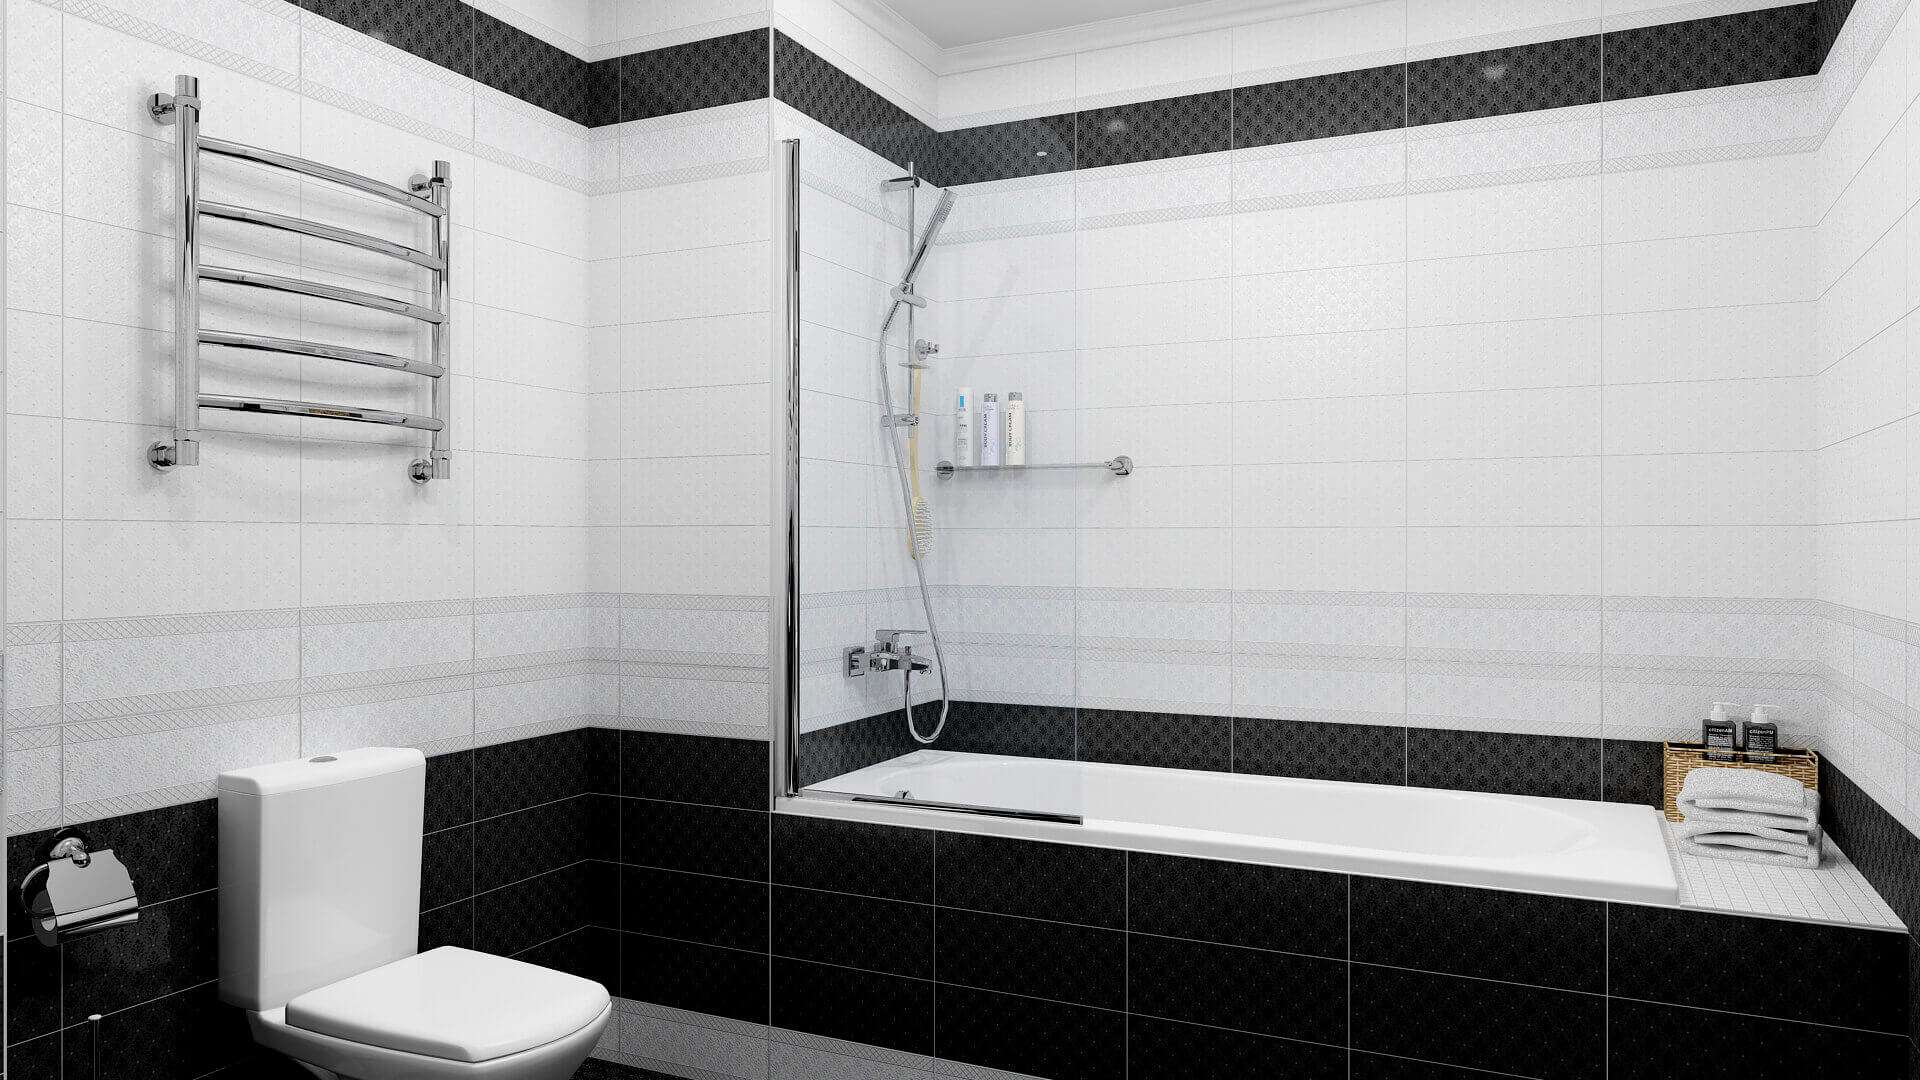  плитка в ванной комнате фото: глянцевый кафель на пол и матовые .